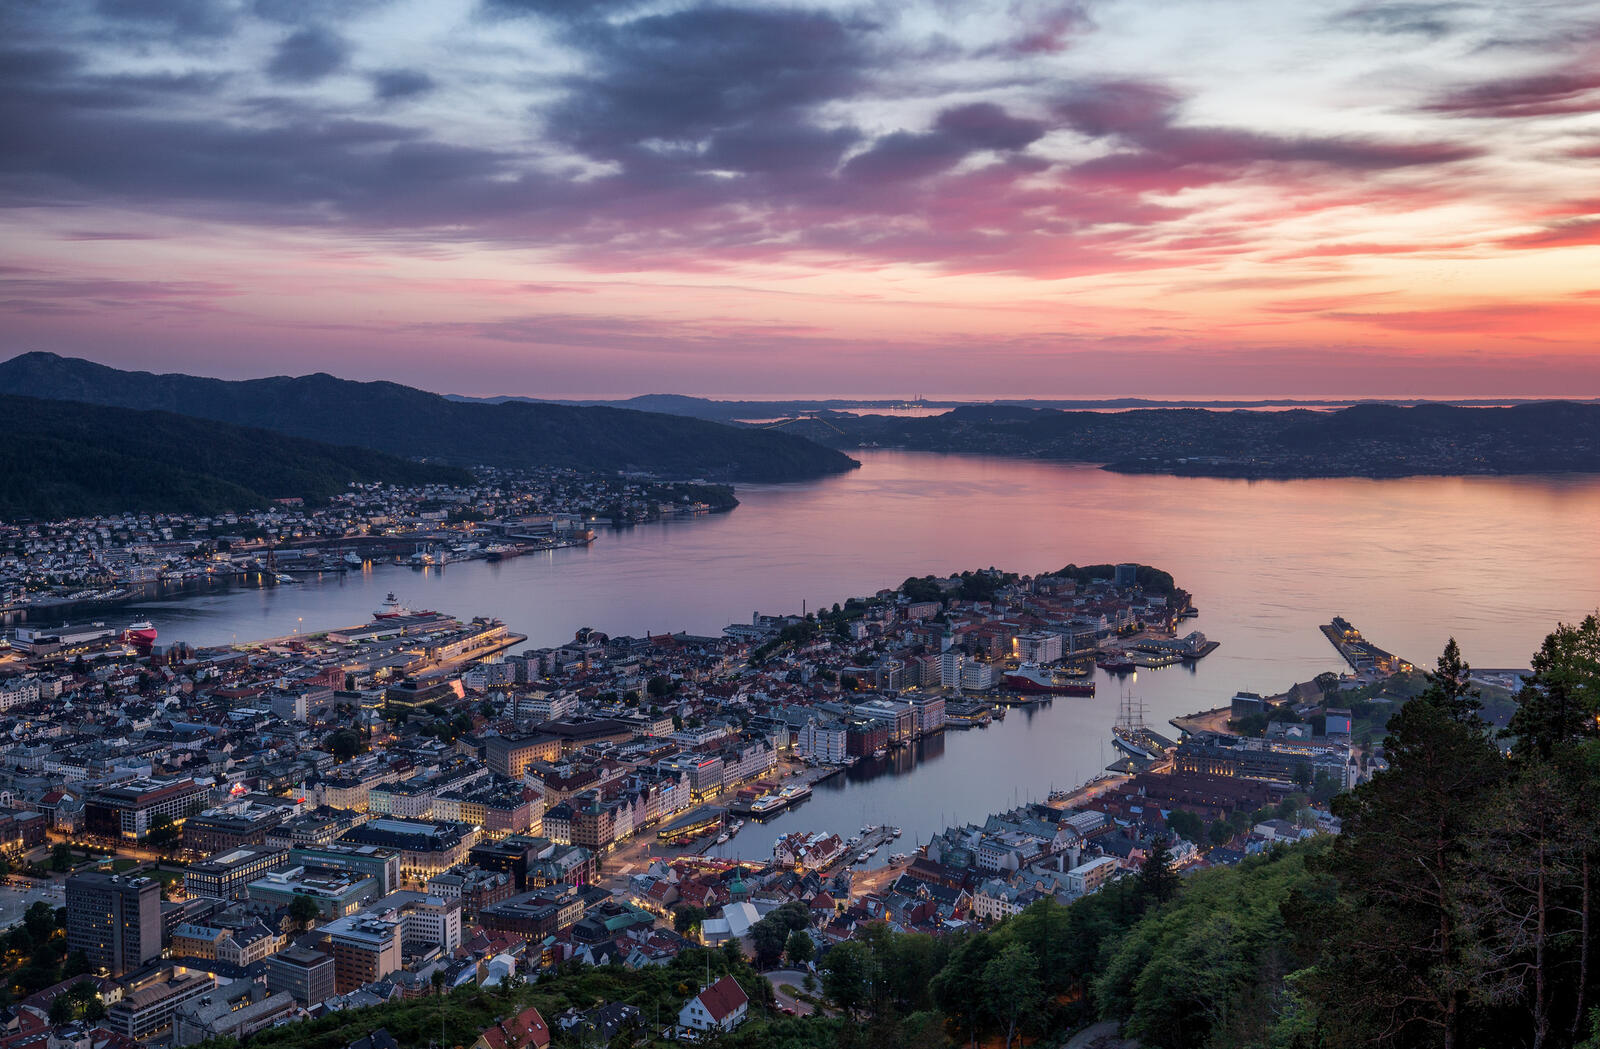 Wallpapers Bergen Norway dusk on the desktop